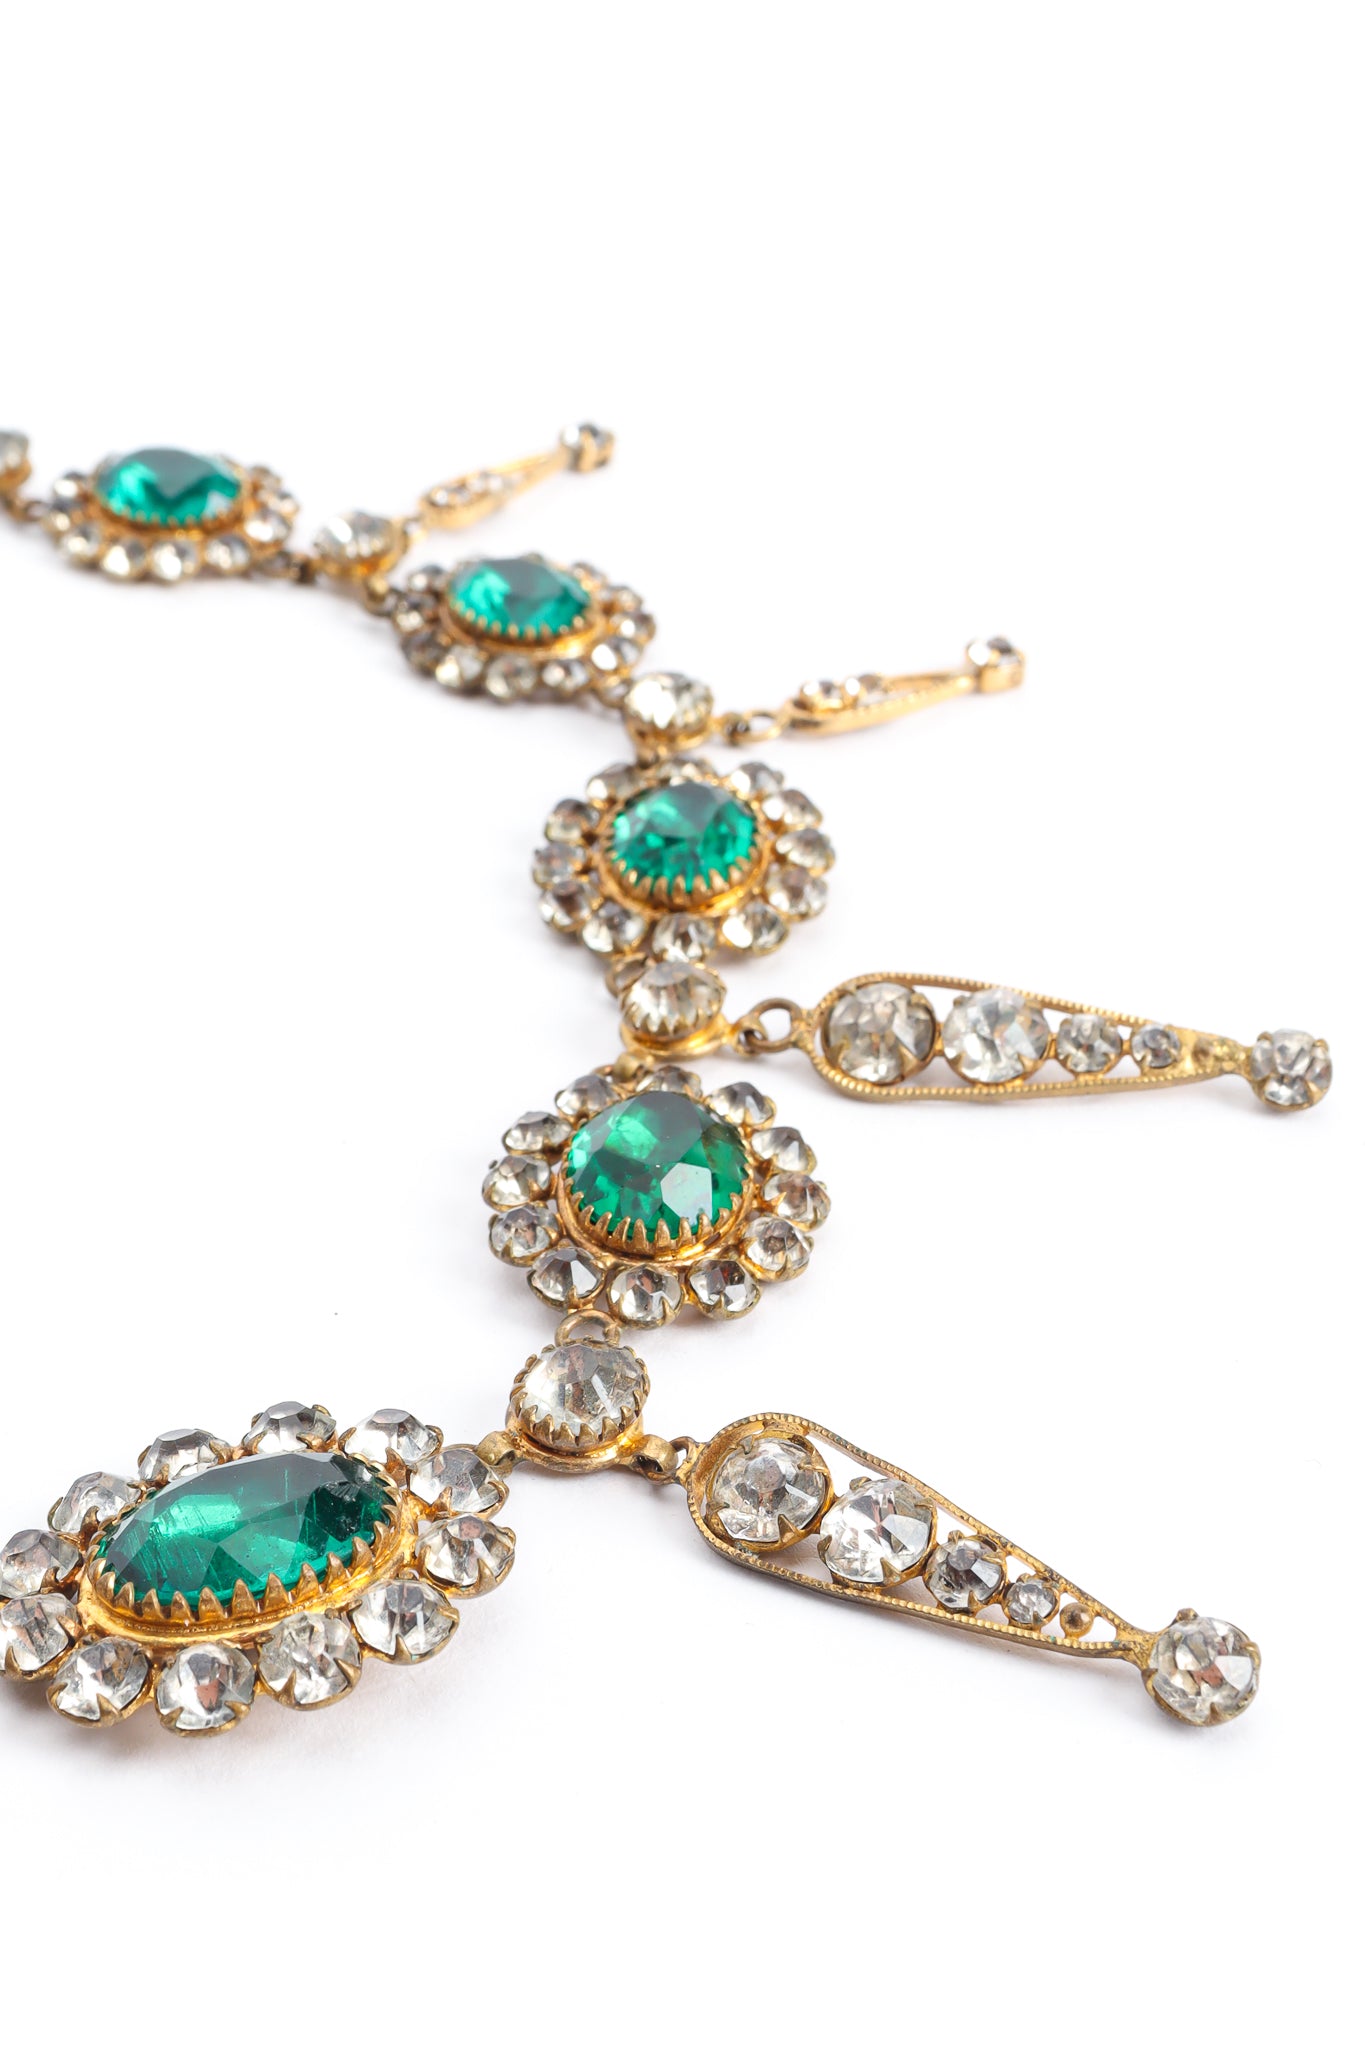 Vintage Emerald Rhinestone Drop Necklace detail @ Recess Los Angeles